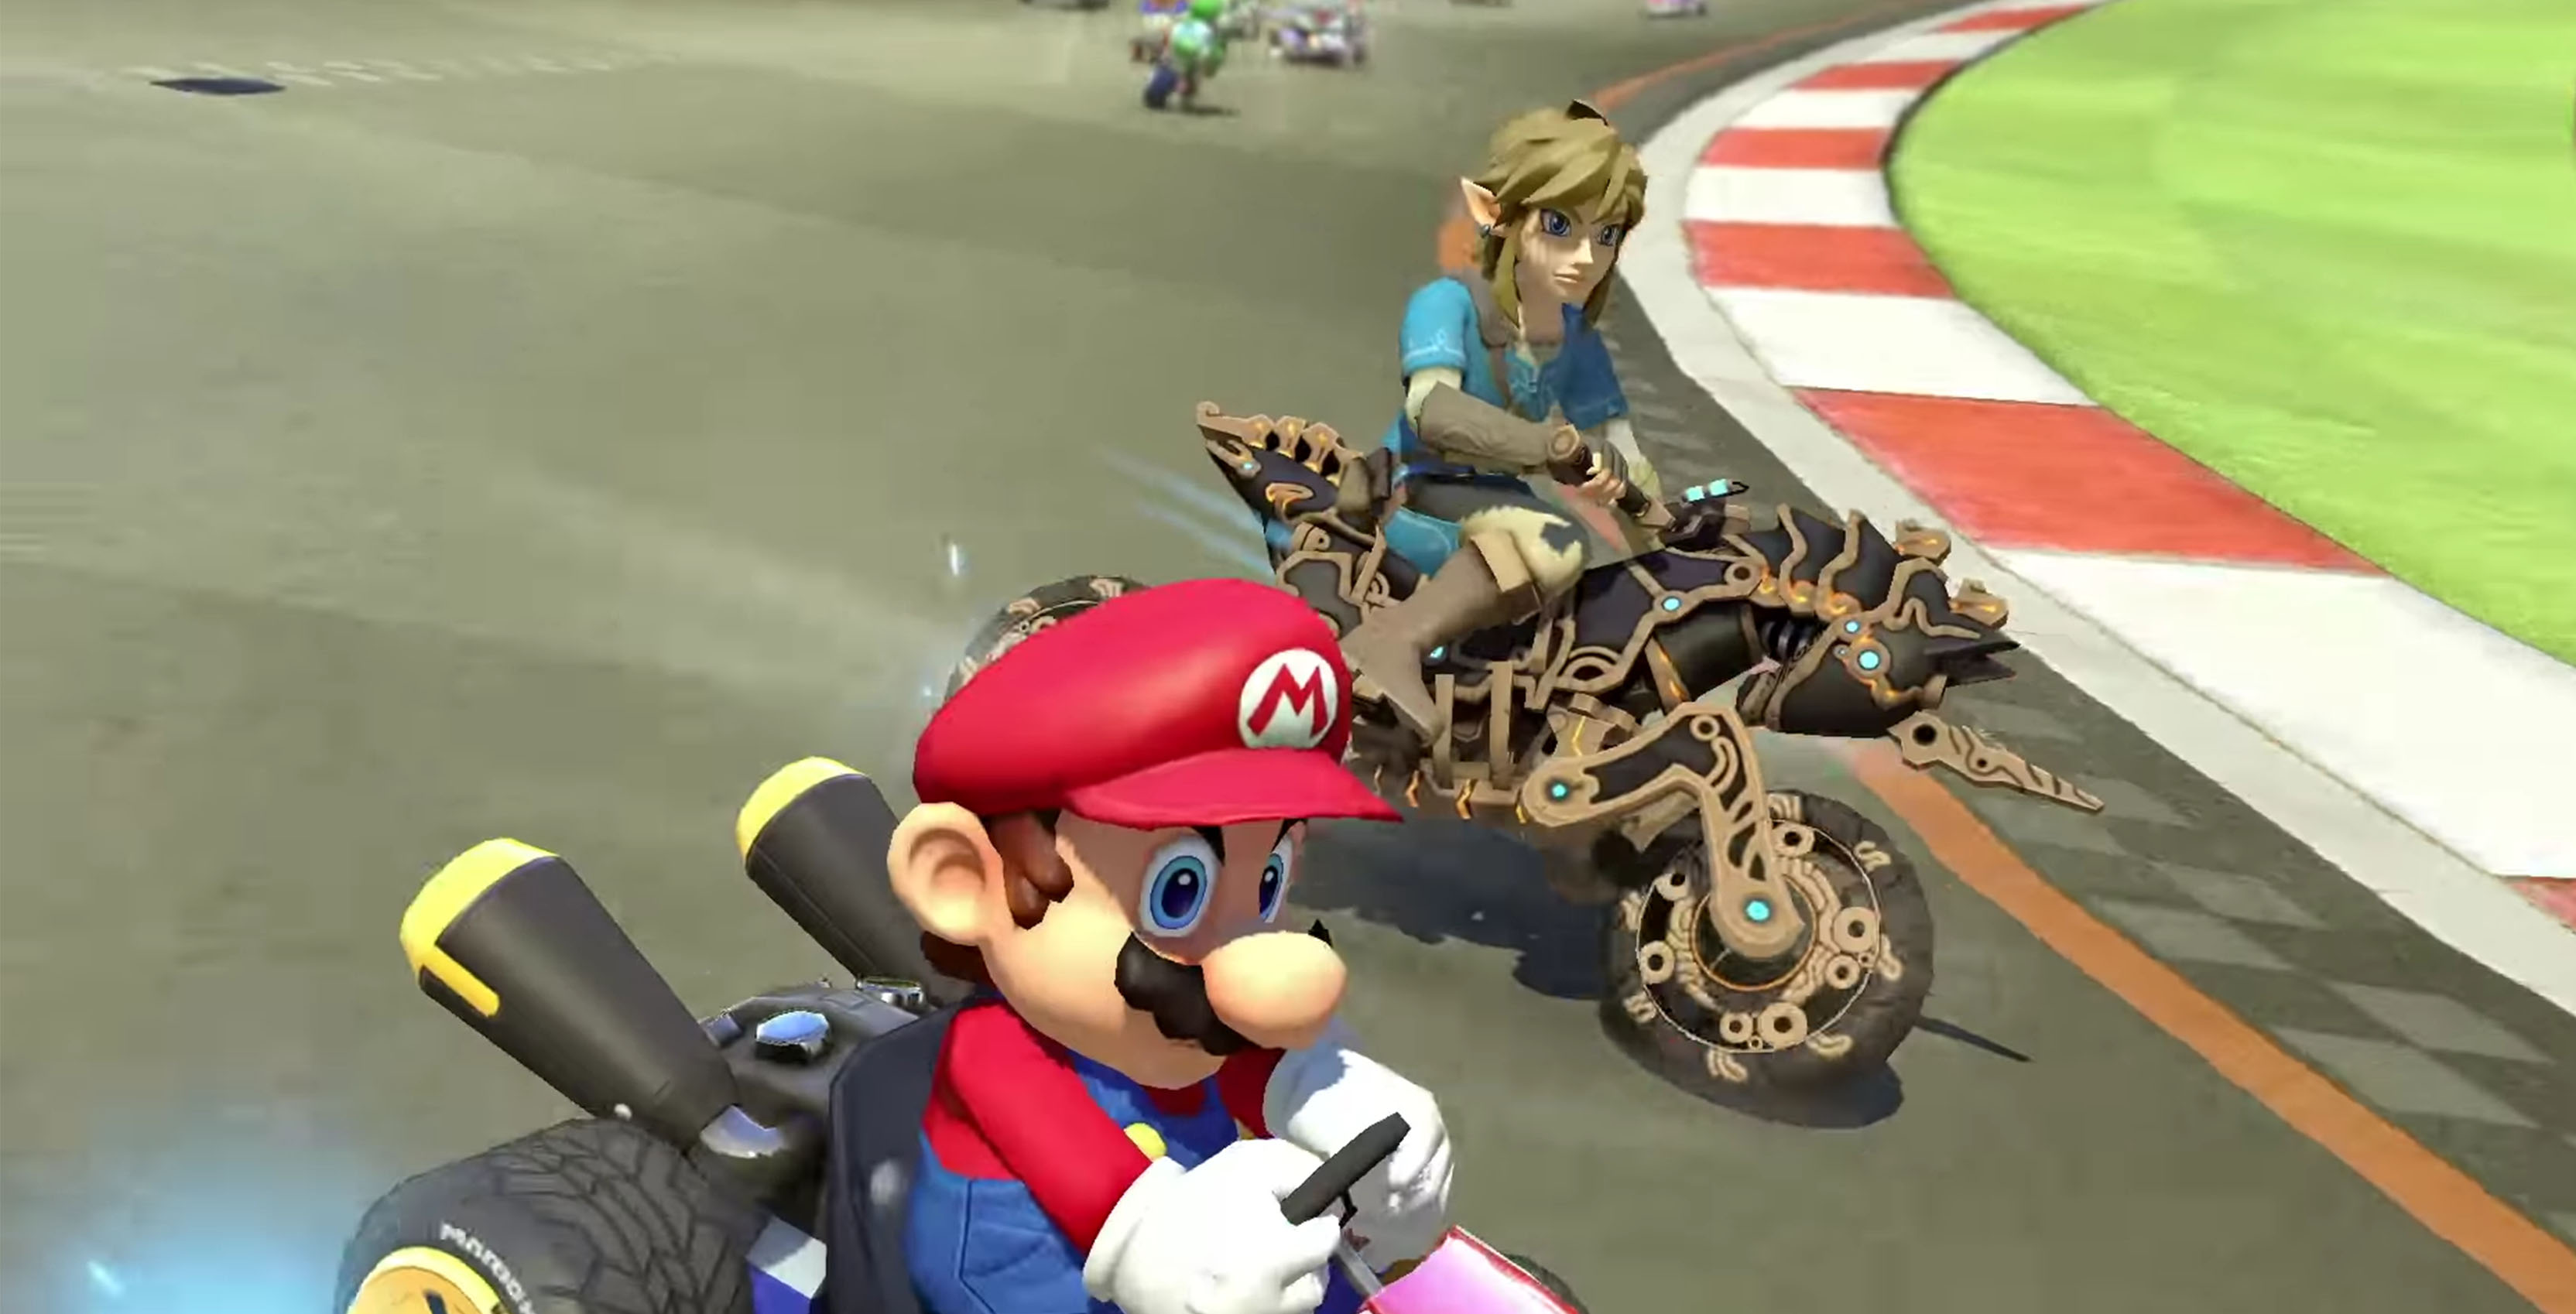 Link in Mario Kart 8 Deluxe